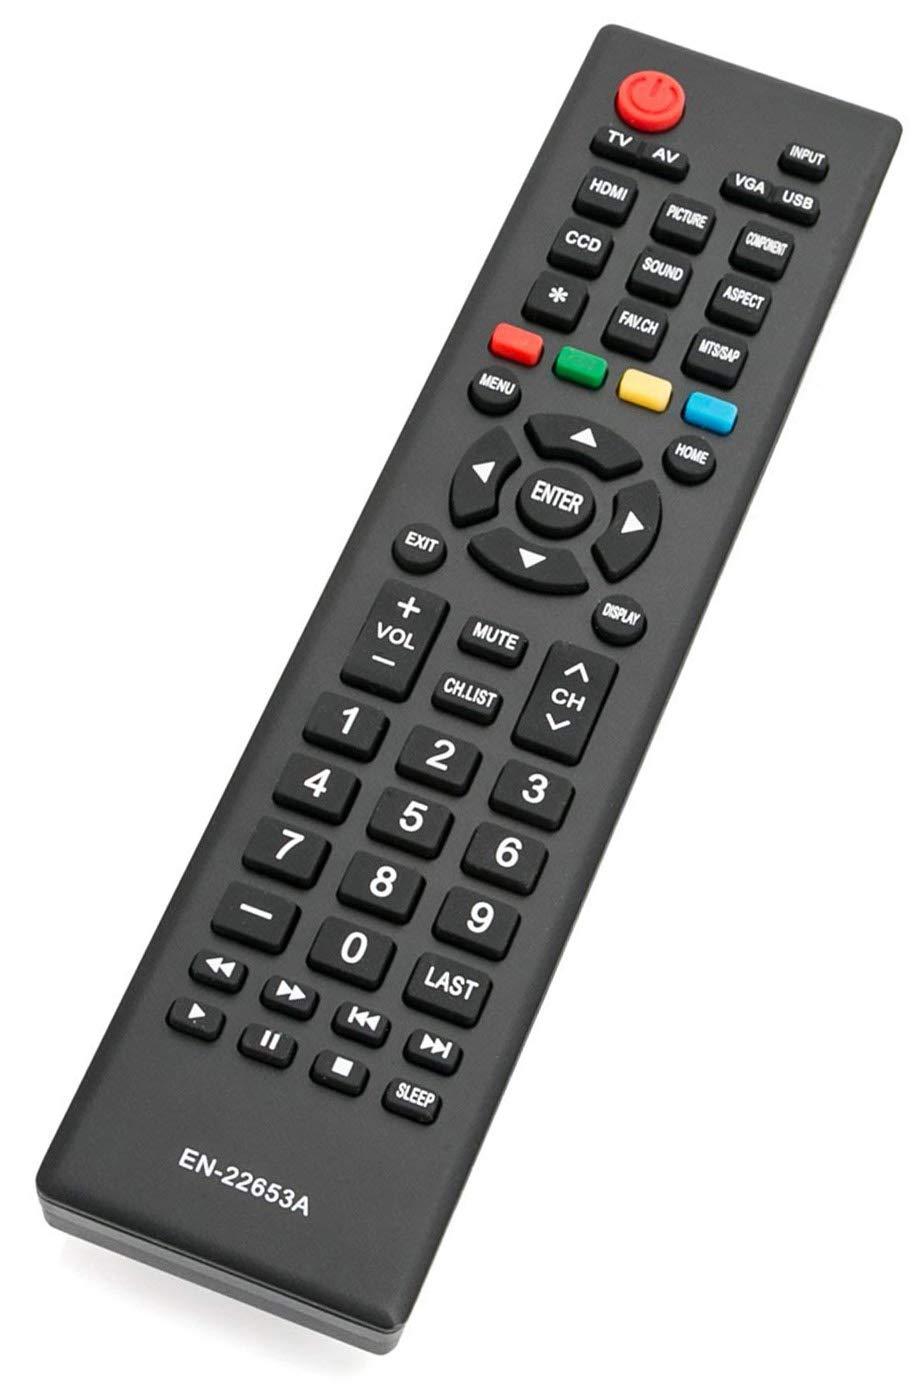 EN-22653A Remote Control Compatible with Hisense TV 32K20D 46K360M 32A320 39A320 50K20D 40H3 50H3 50K23DG 40H3 40K360MN 46K360MN 46K360MV1 46K360MV2 40K24D 50H3B 40K360M 40K20D